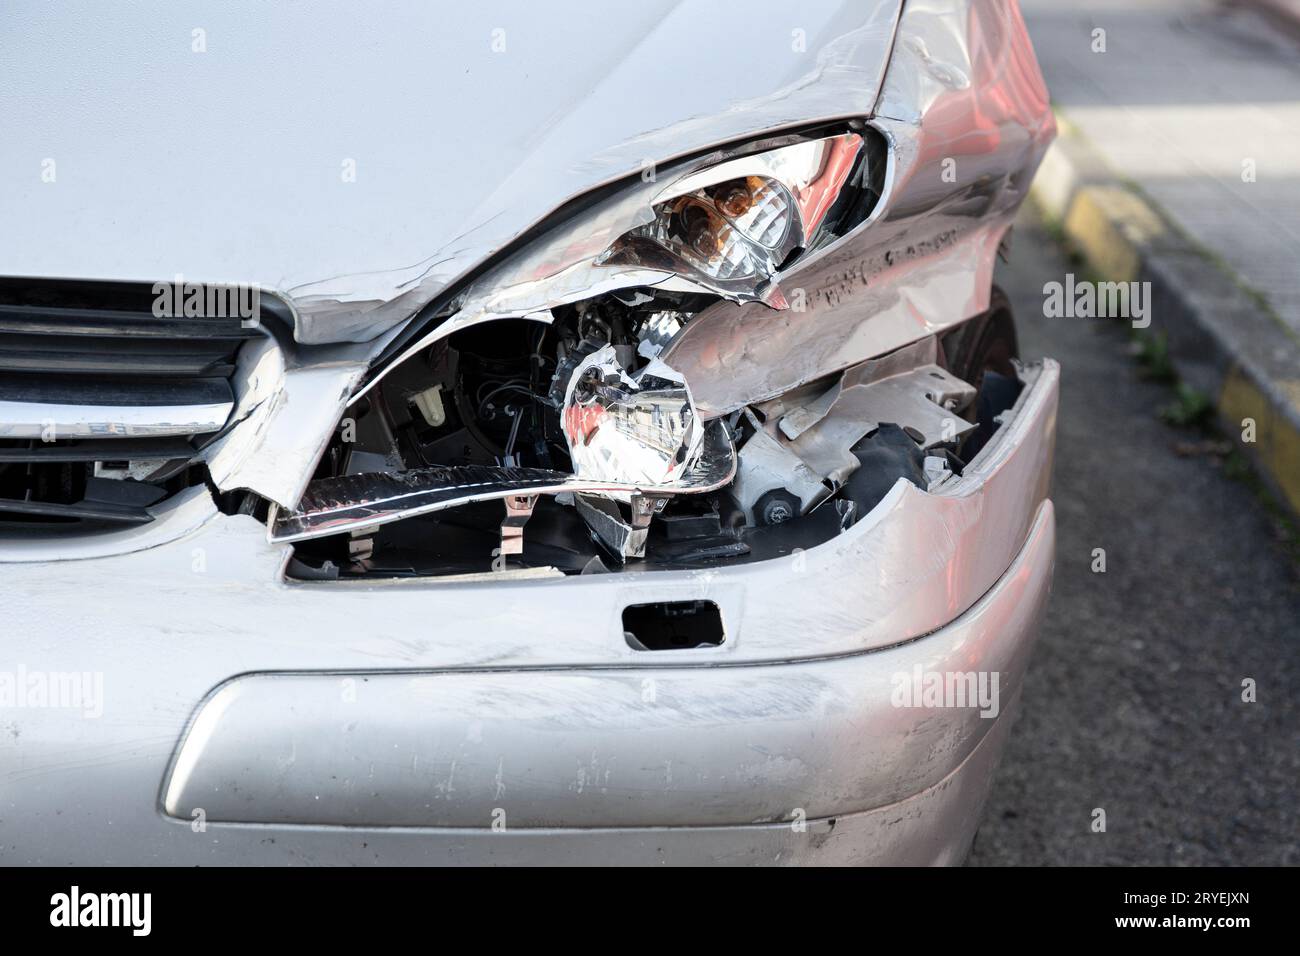 Auto hat verbeult Rückseite Stoßstange beschädigt nach Unfall